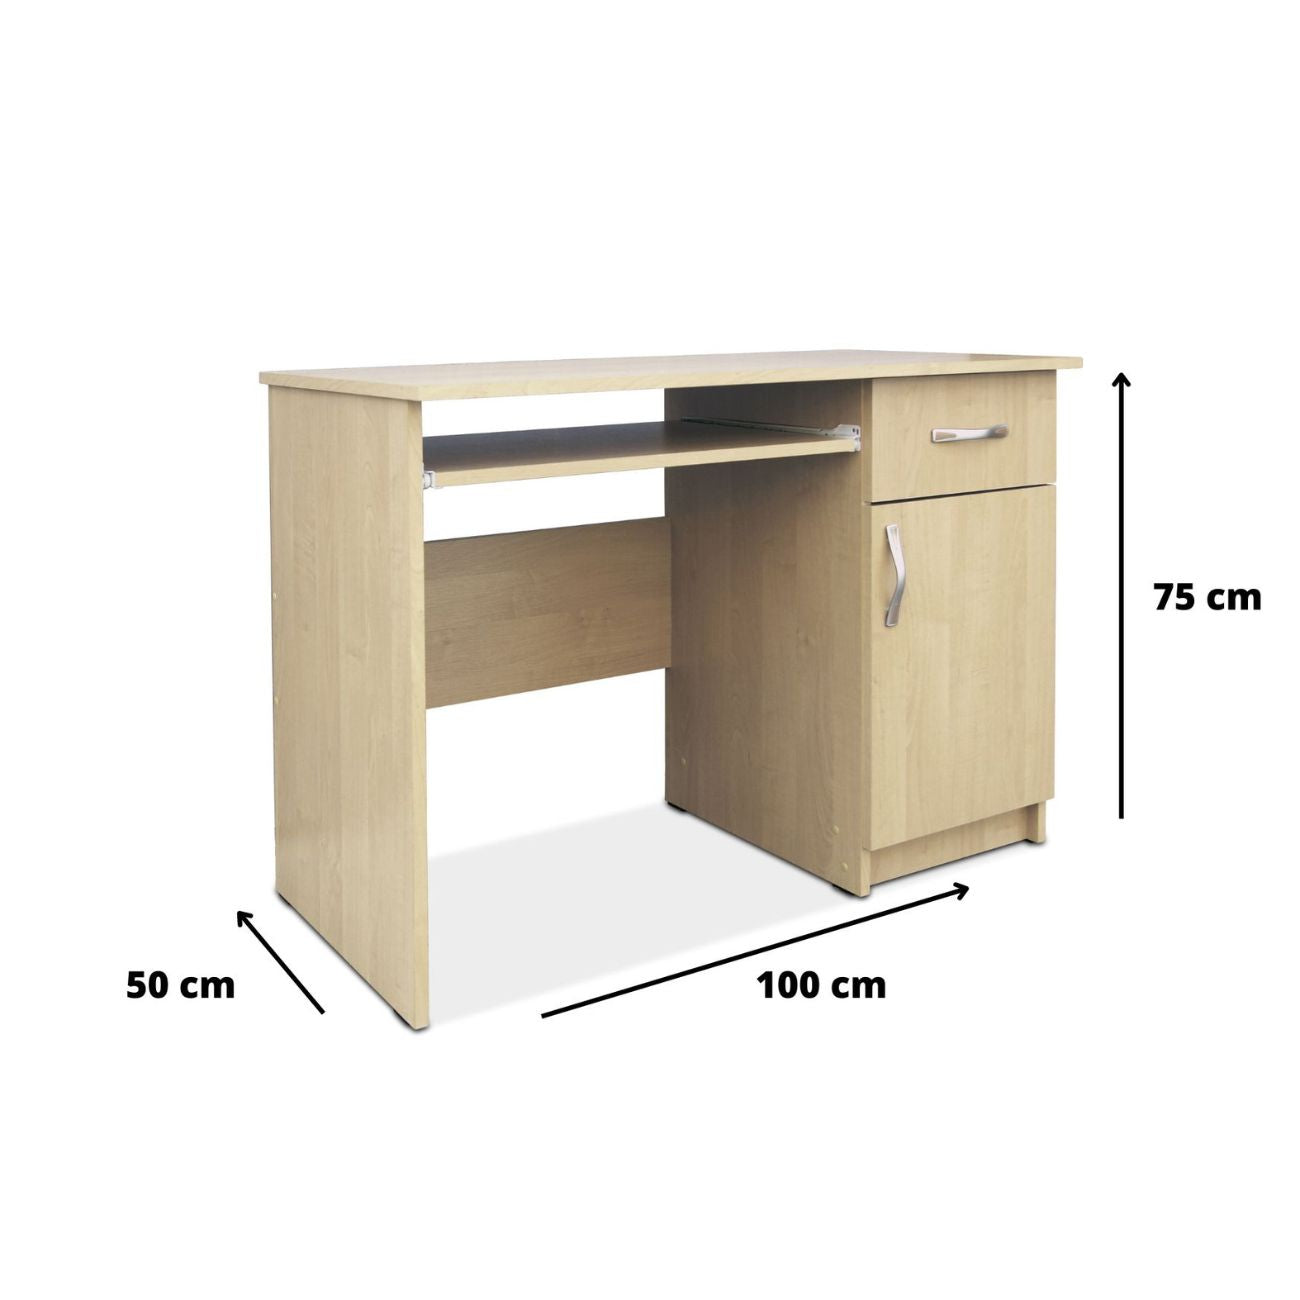 Wymiary małego biurka szkolnego STAŚ 100 cm. szuflada są tak dostosowane, aby nie zajmowało ono dużo miejsca, będąc zarazem funkcjonalnym i stabilnym meblem.